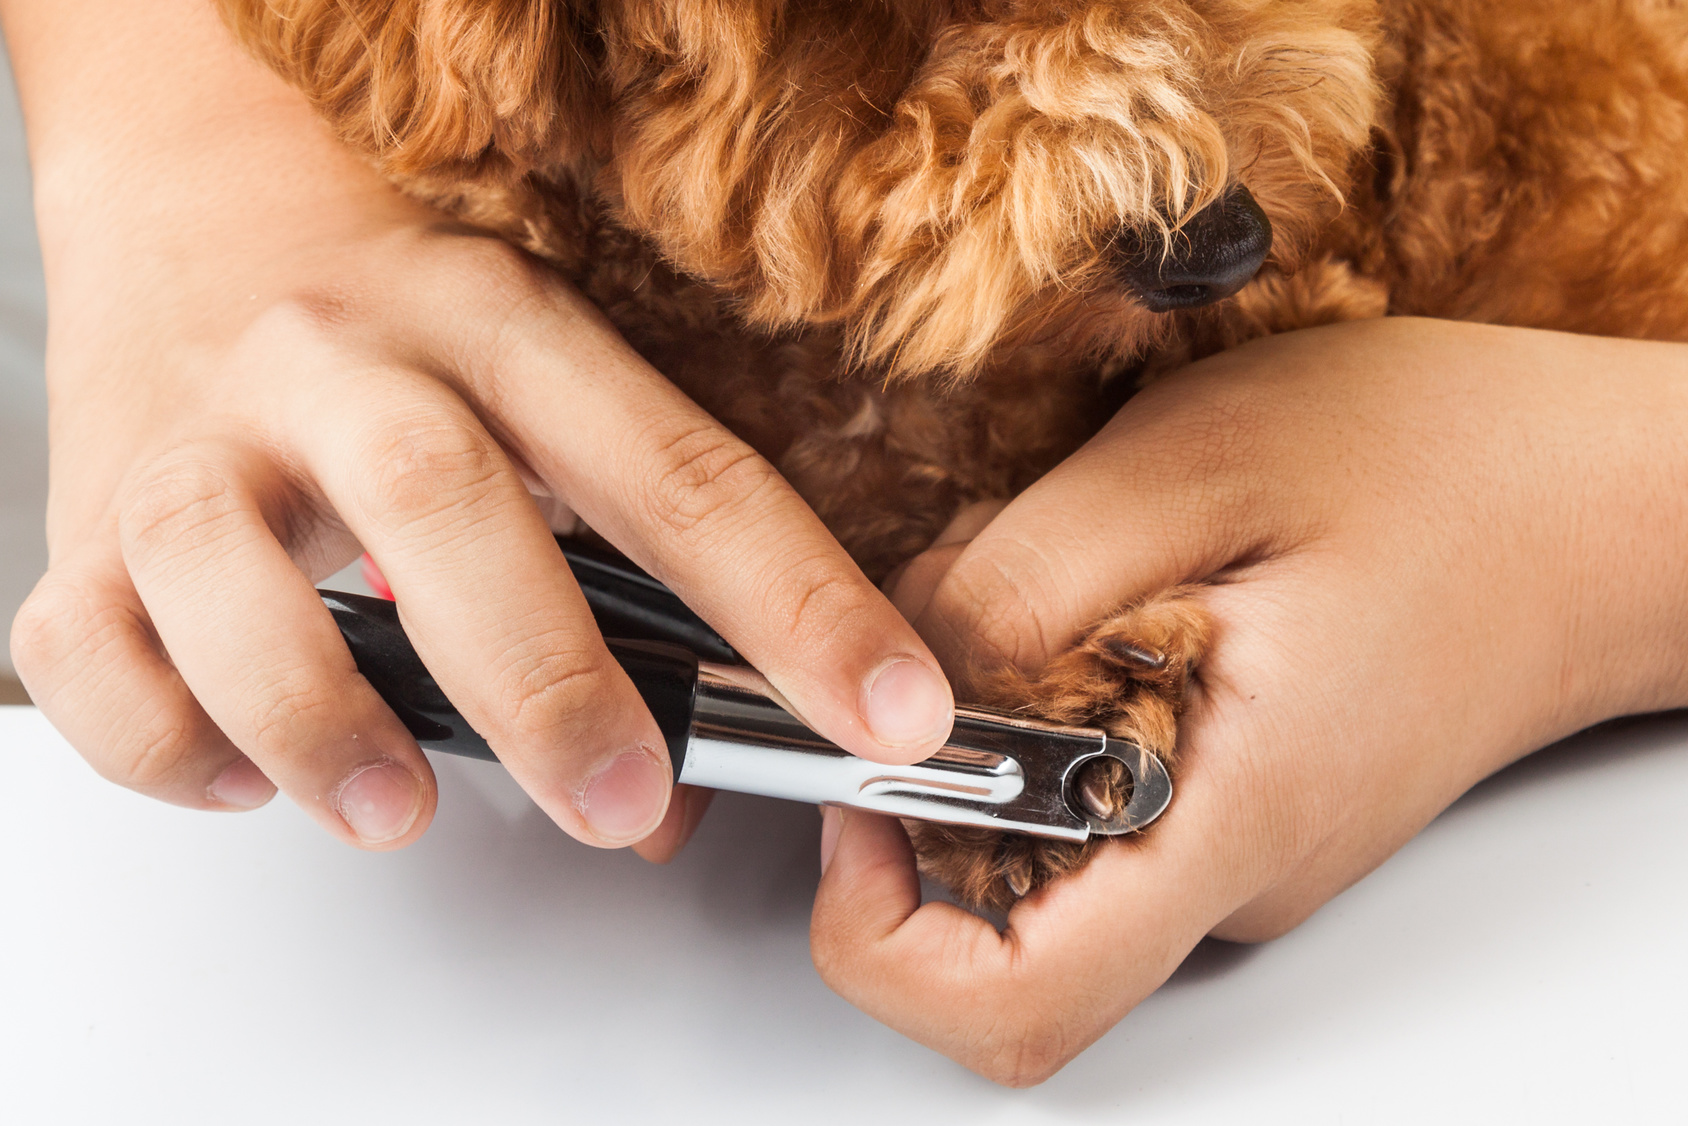 獣医師が教える 犬の爪切りの方法とコツ 嫌がる犬への対処法も解説 アクサダイレクト